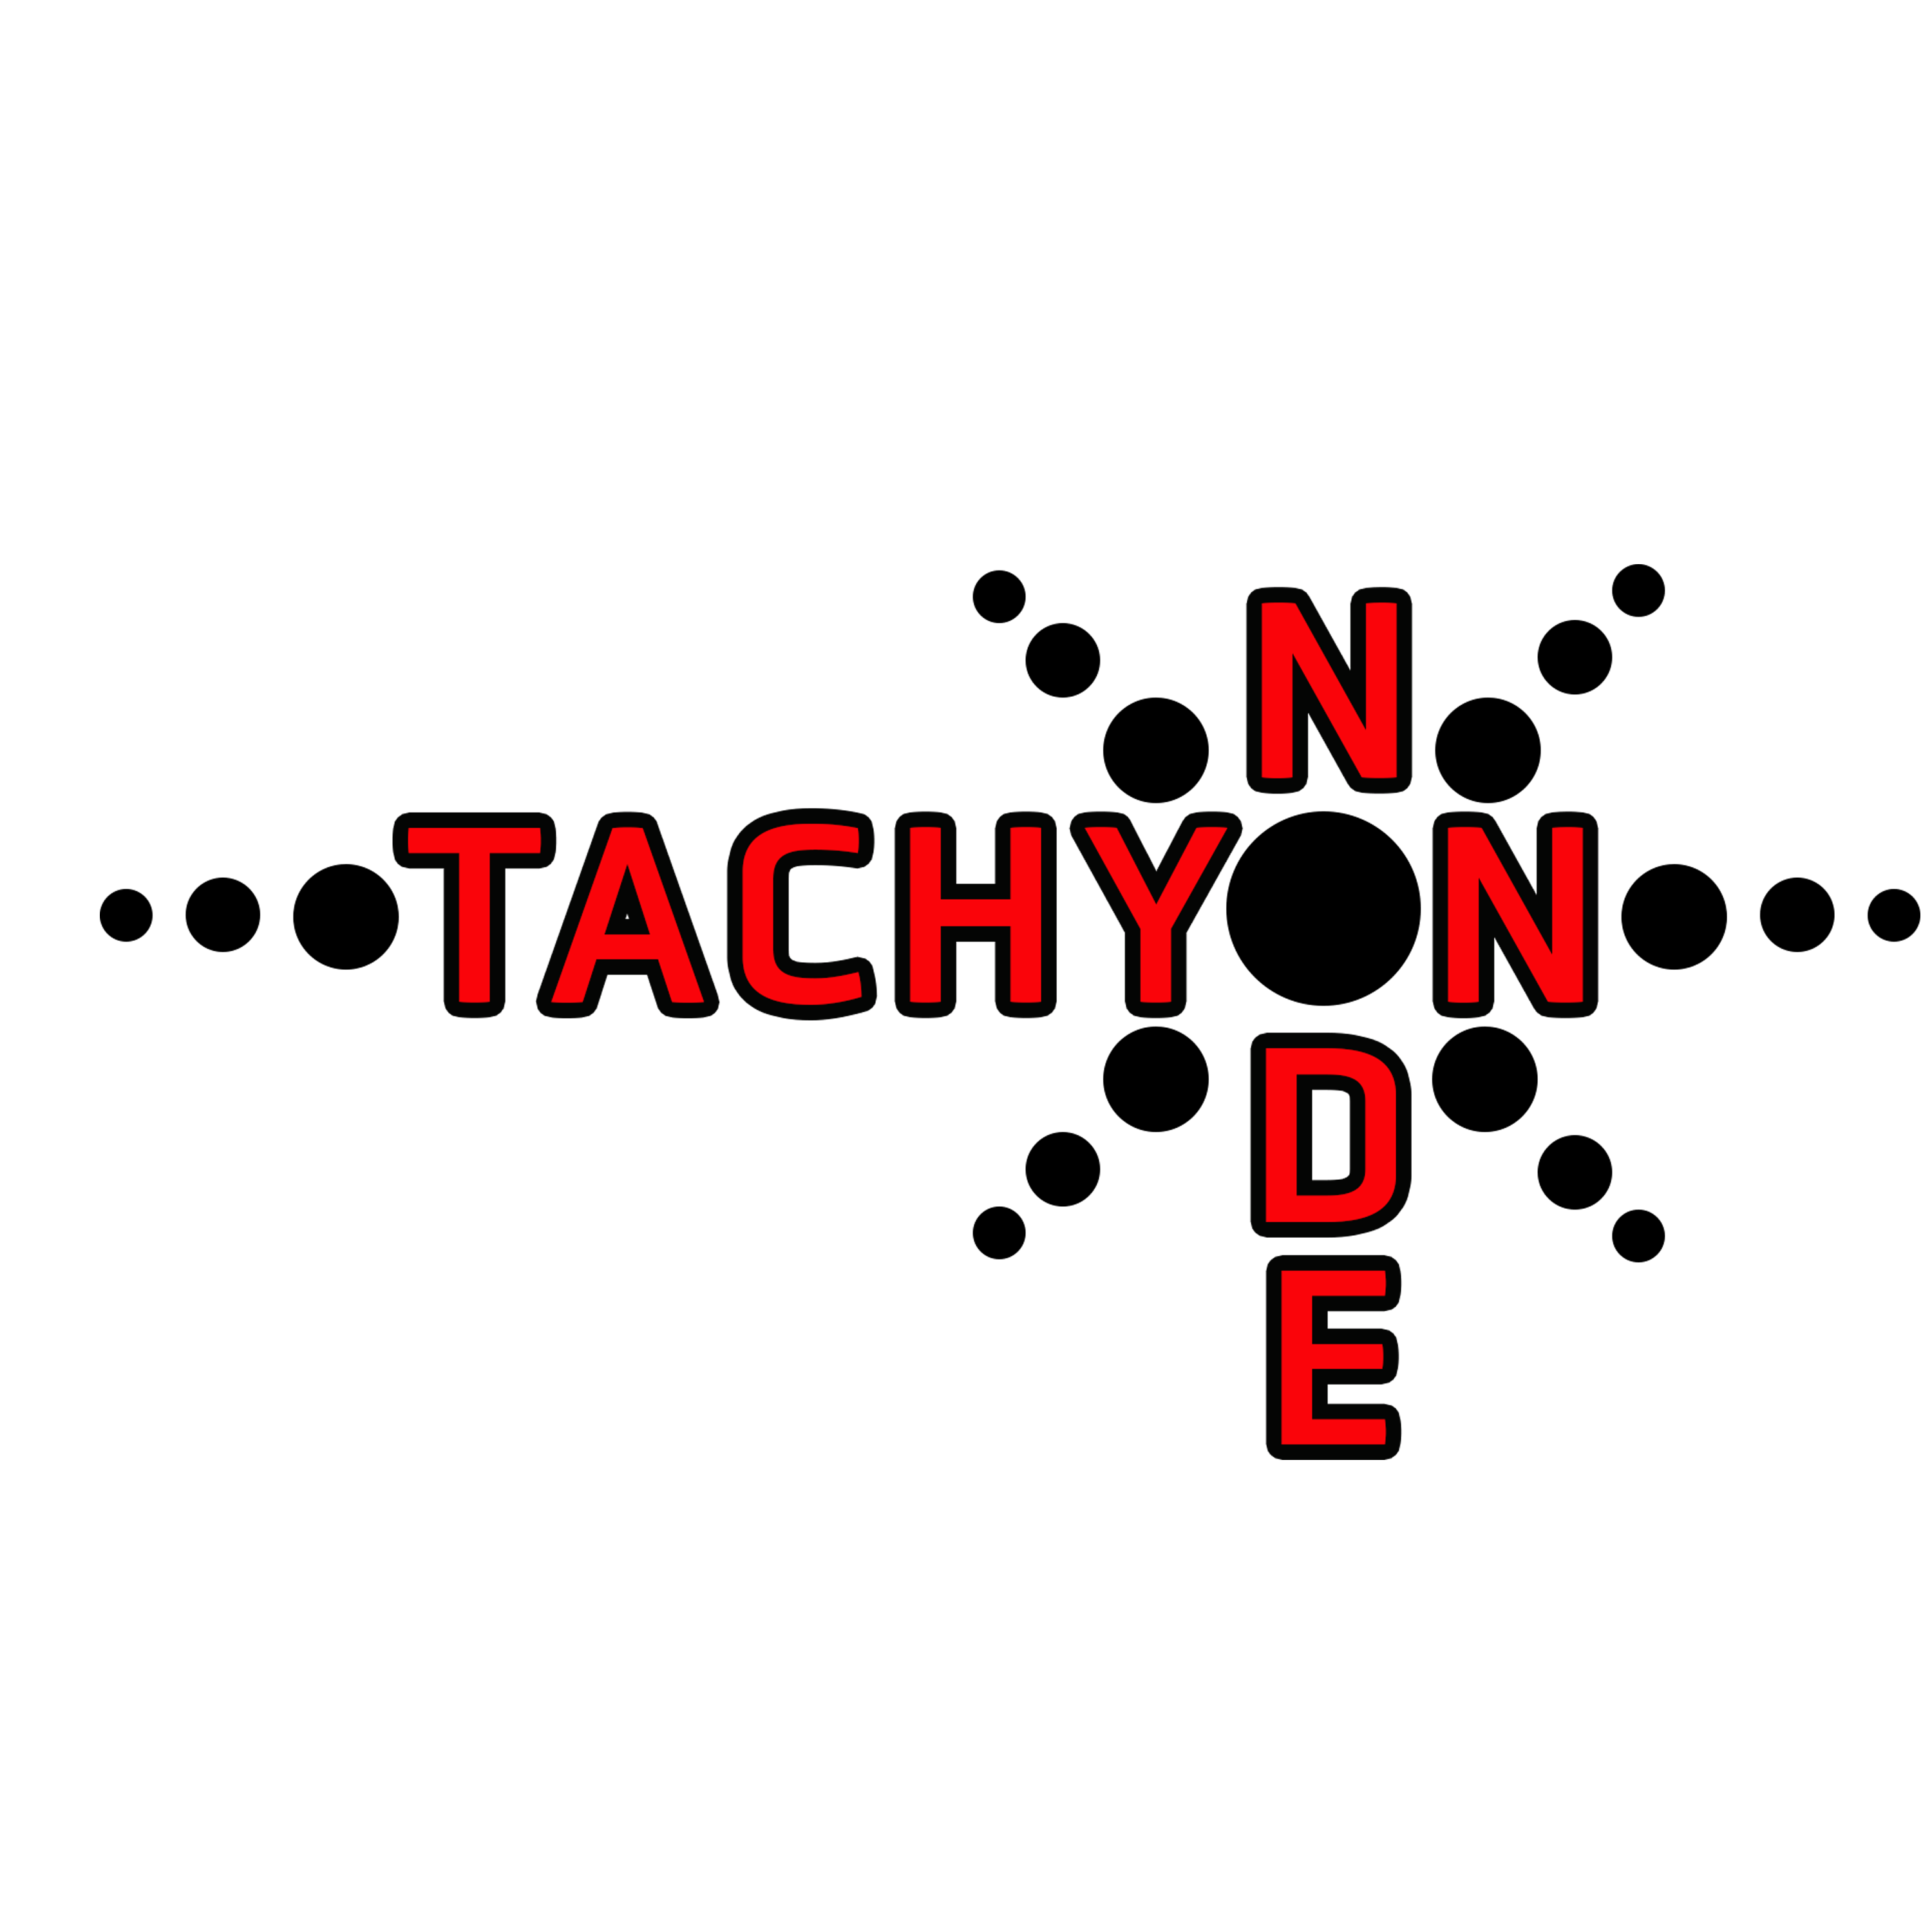 Tachyon Node Space